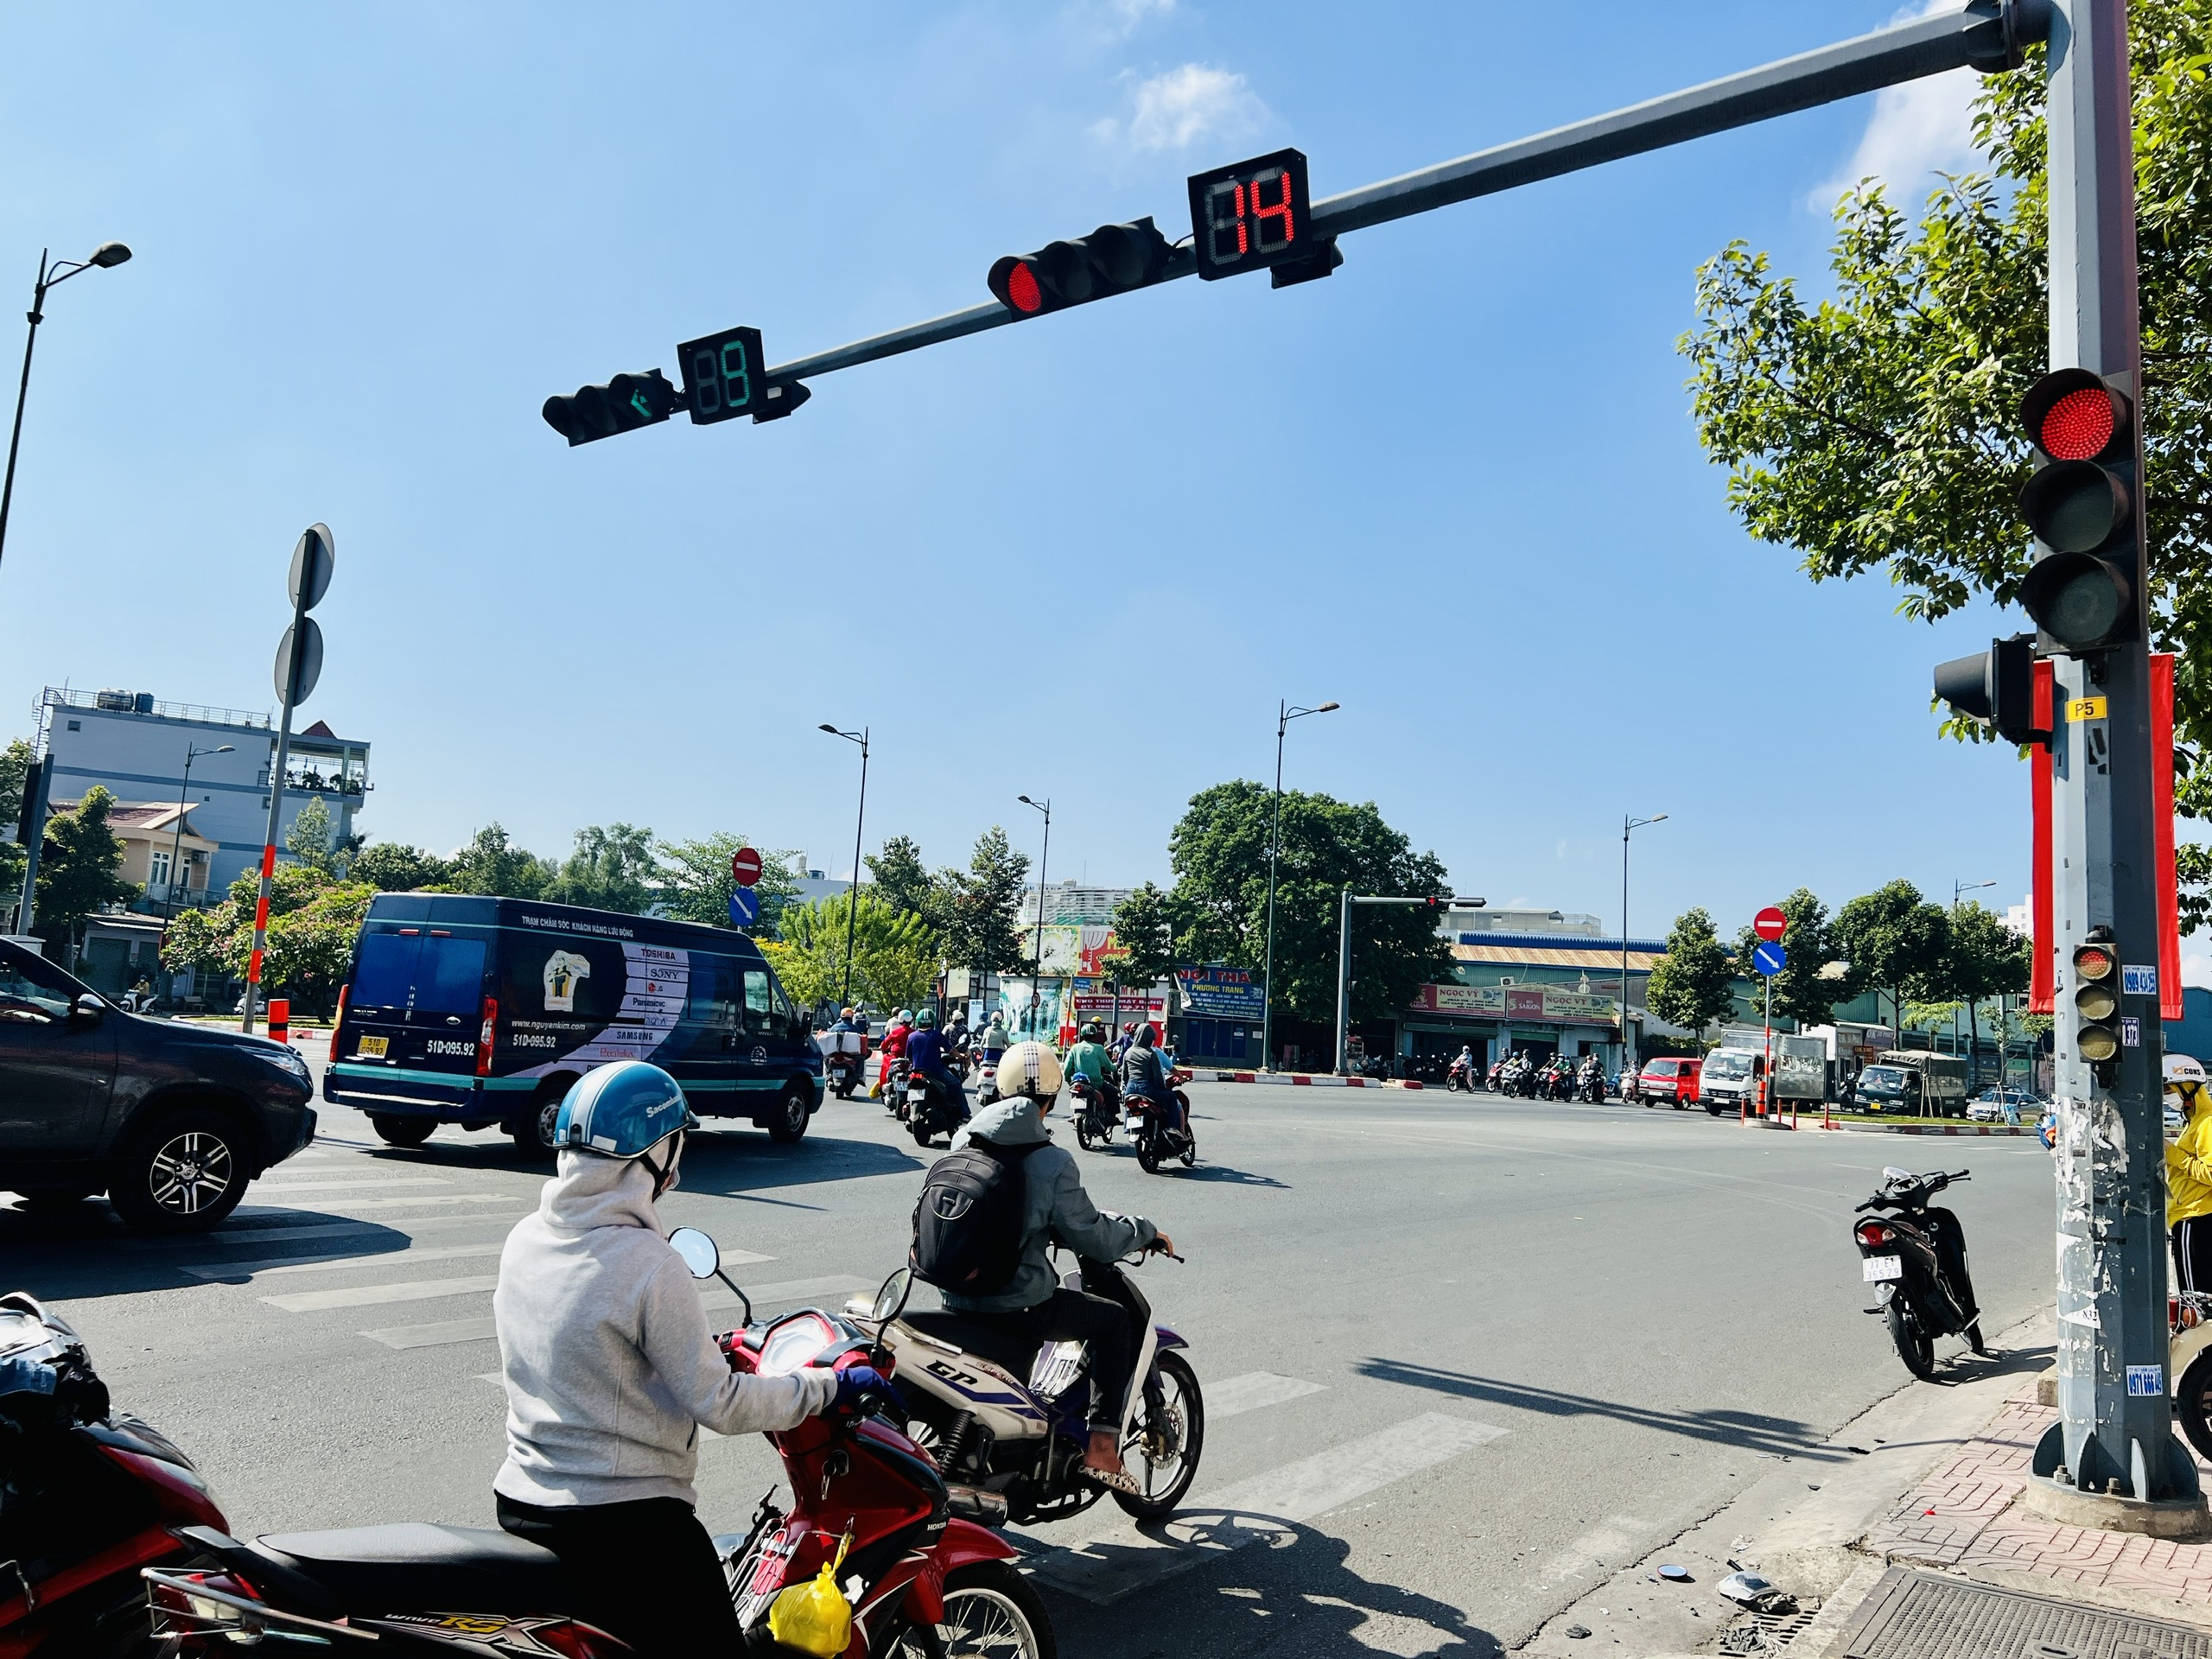 Ngã tư không giao cắt: Bạn muốn biết những công trình giao thông hiện đại nhất của Việt Nam? Hãy xem qua hình ảnh về hệ thống ngã tư không giao cắt, giúp giảm thiểu ùn tắc giao thông ở những nơi tập trung xe cộ nhiều nhất.